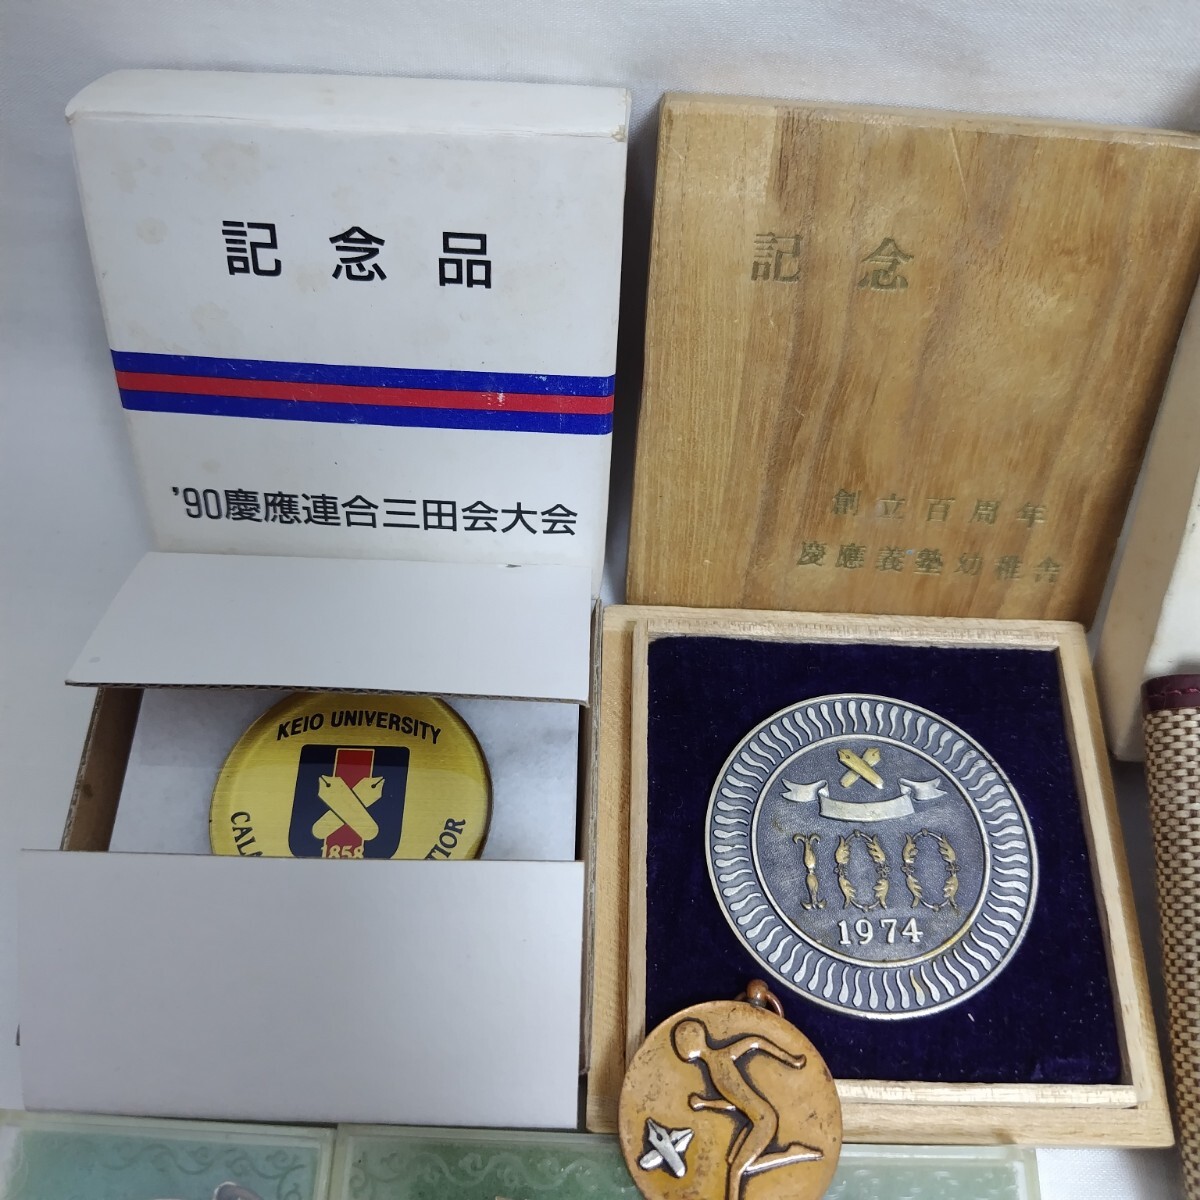 .... память медаль продажа комплектом орден значок знак отличия значок память глава память медаль подлинная вещь 